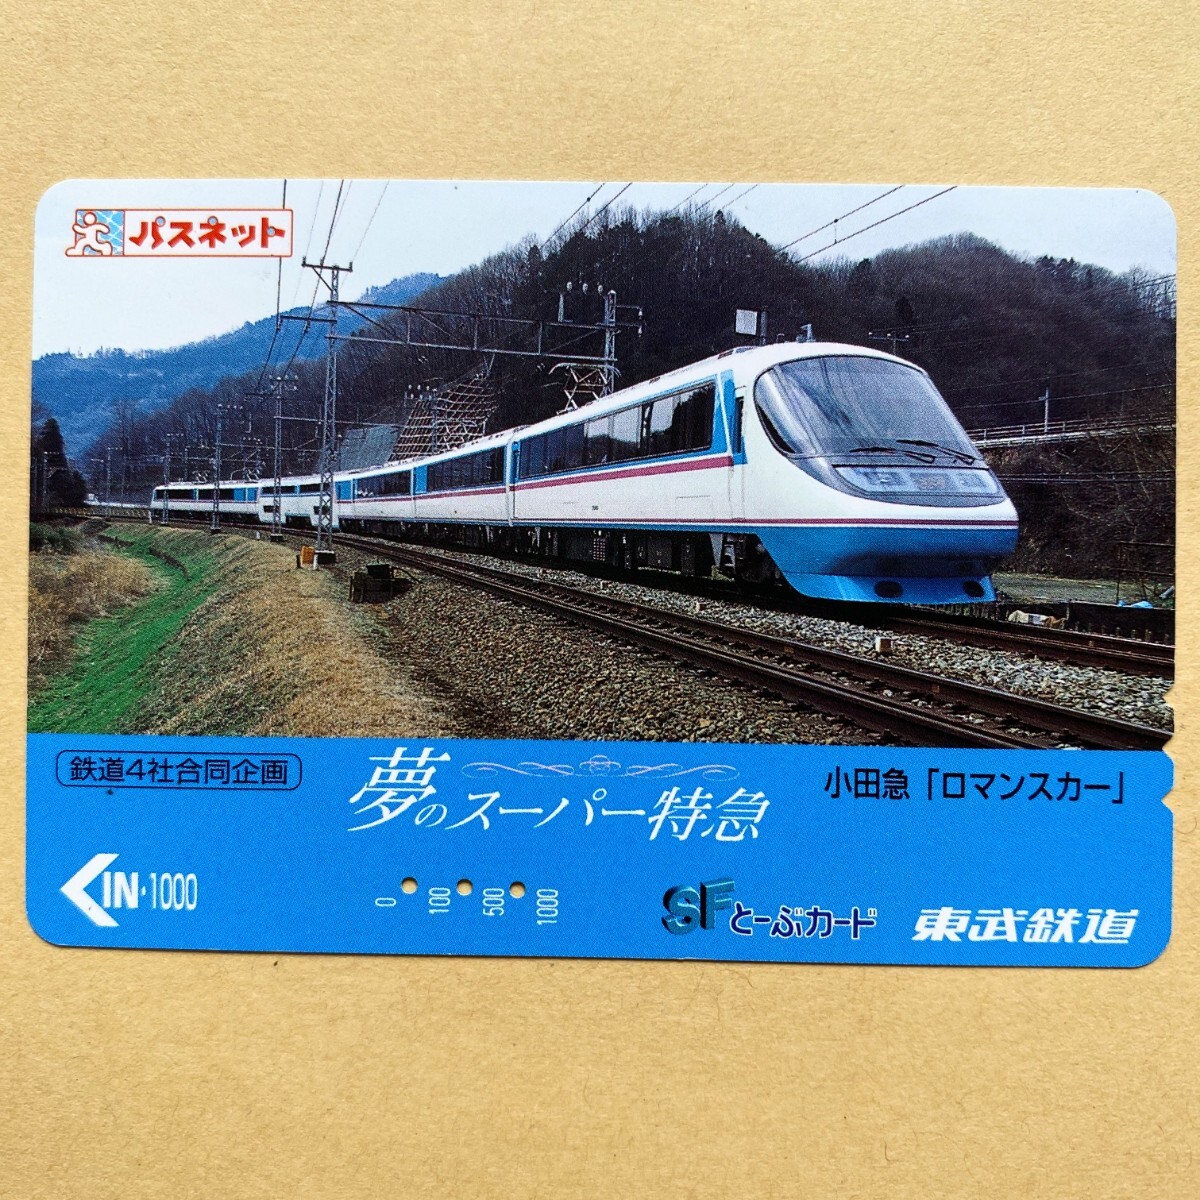 【使用済】 パスネット 東武鉄道 夢のスーパー特急 小田急「ロマンスカー」の画像1